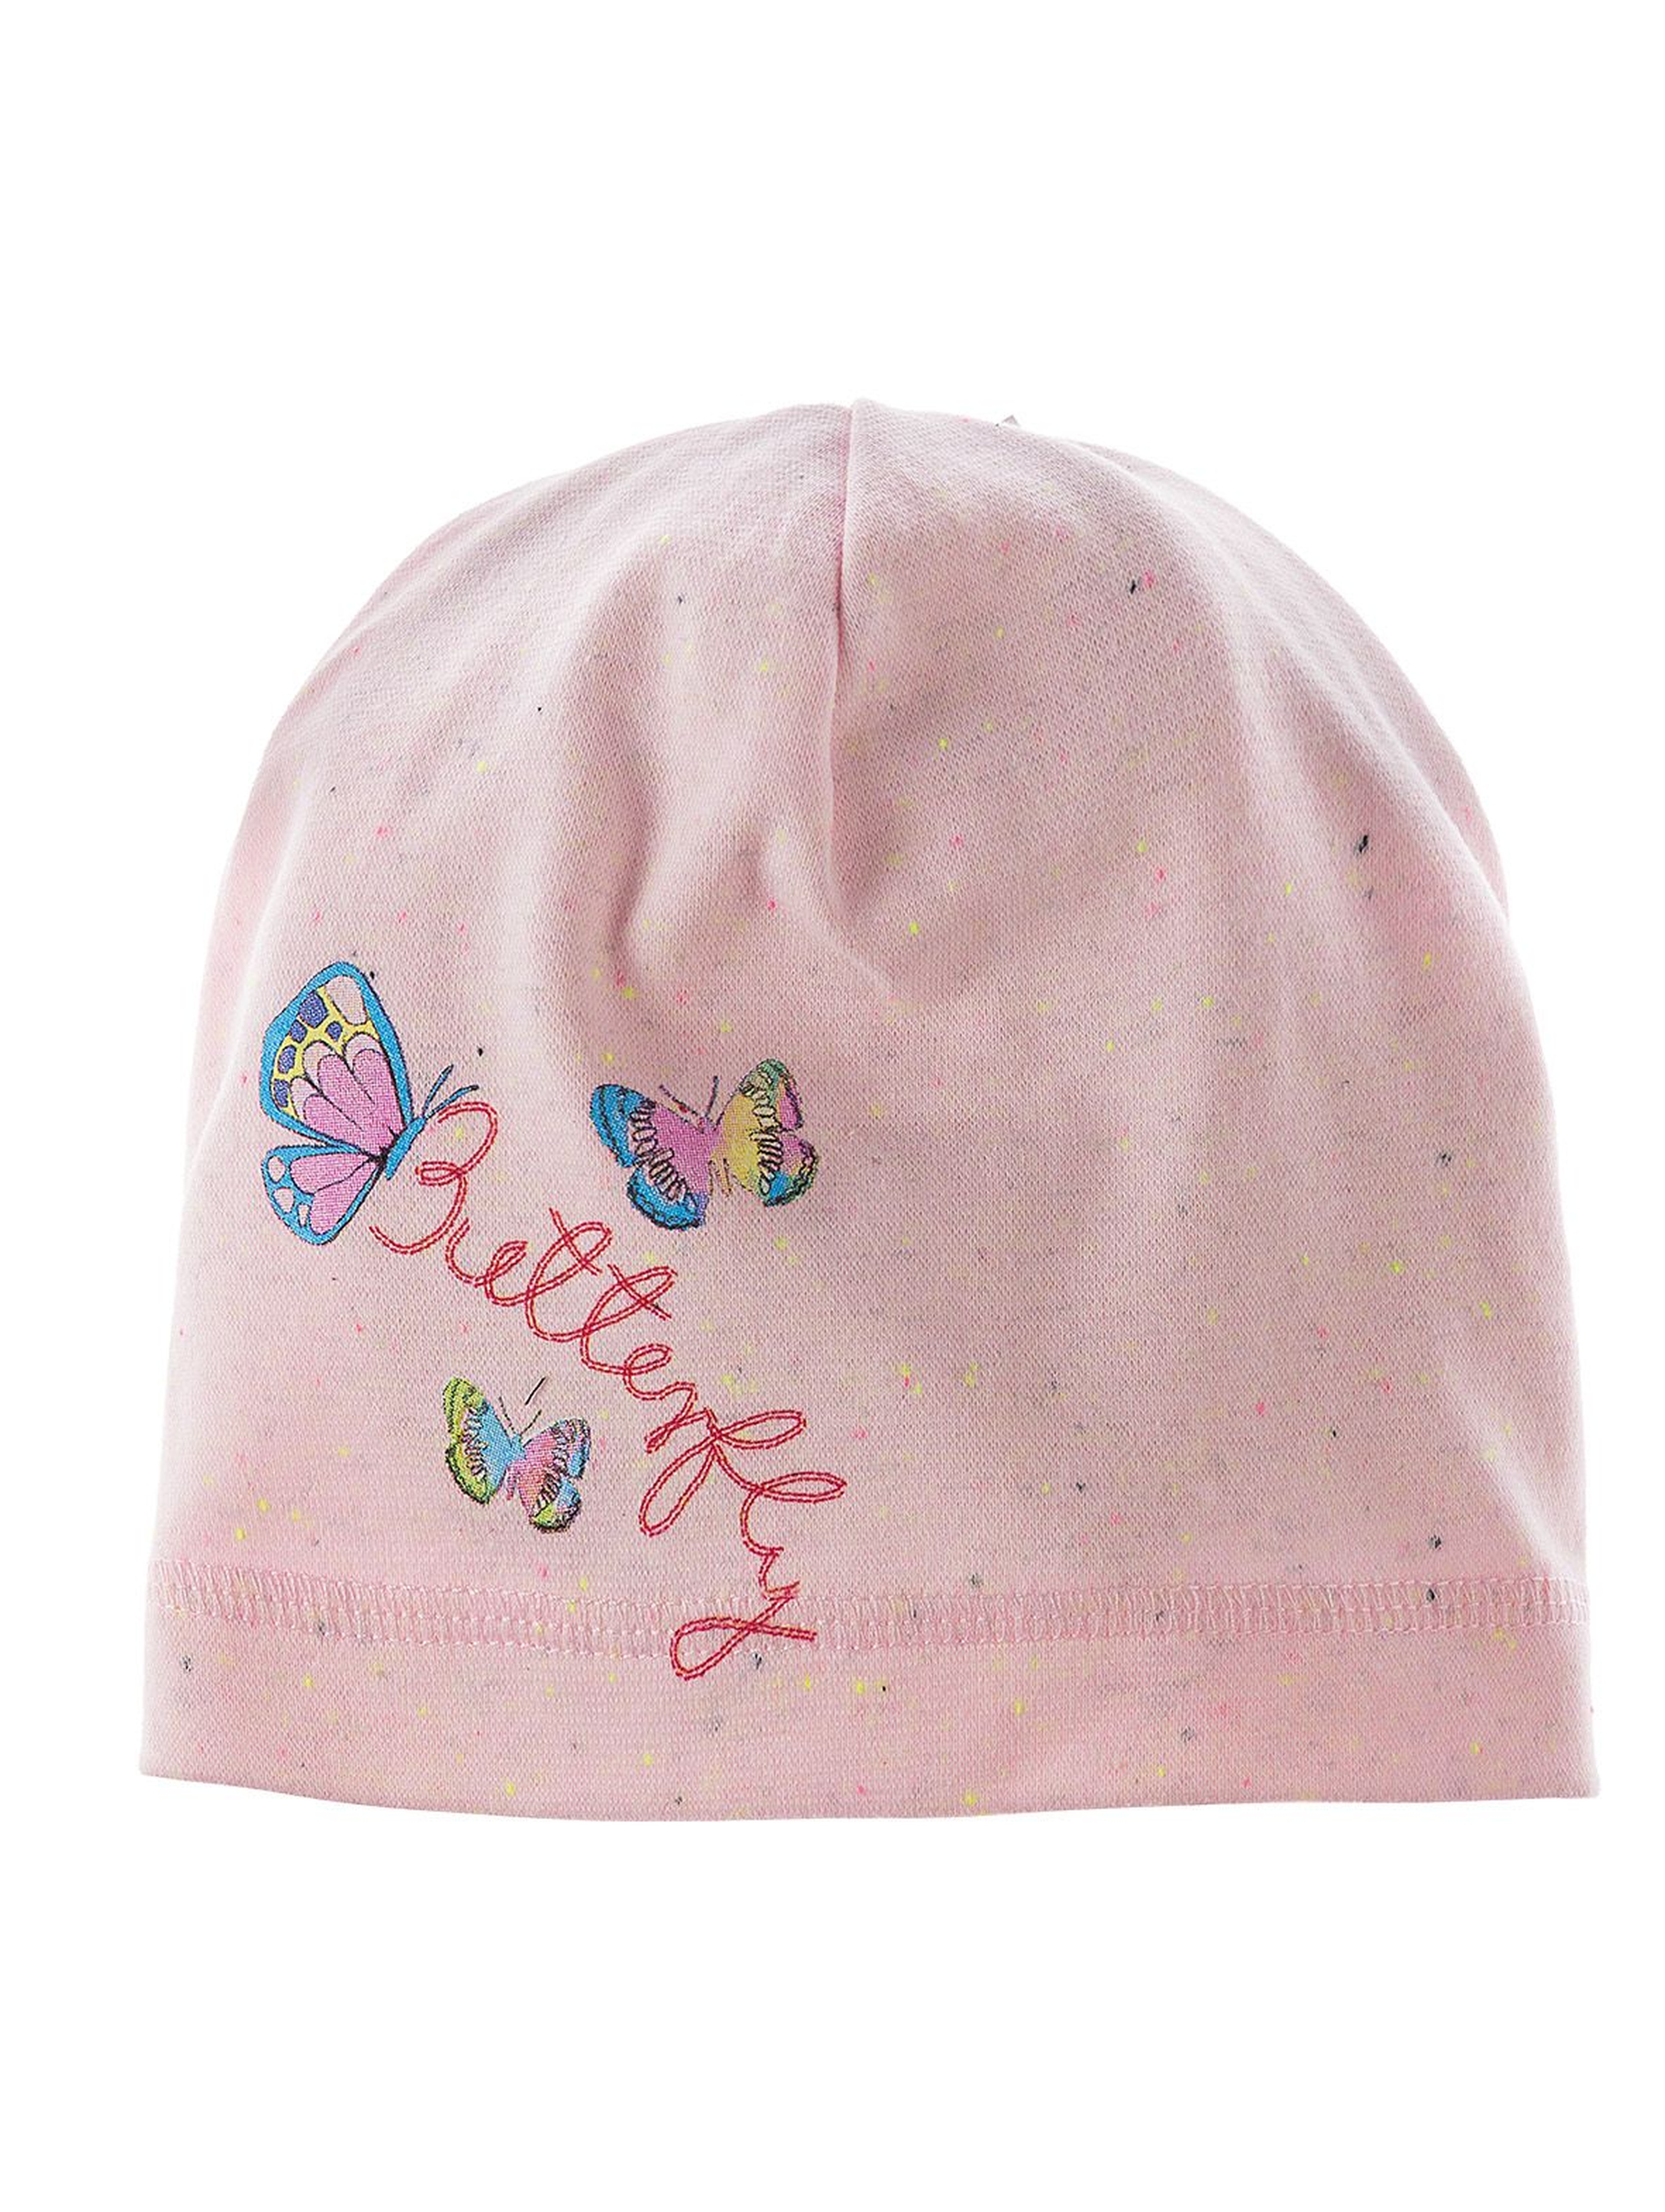 Dzianinowa czapka dla dziewczynki z kolorowym nadrukiem